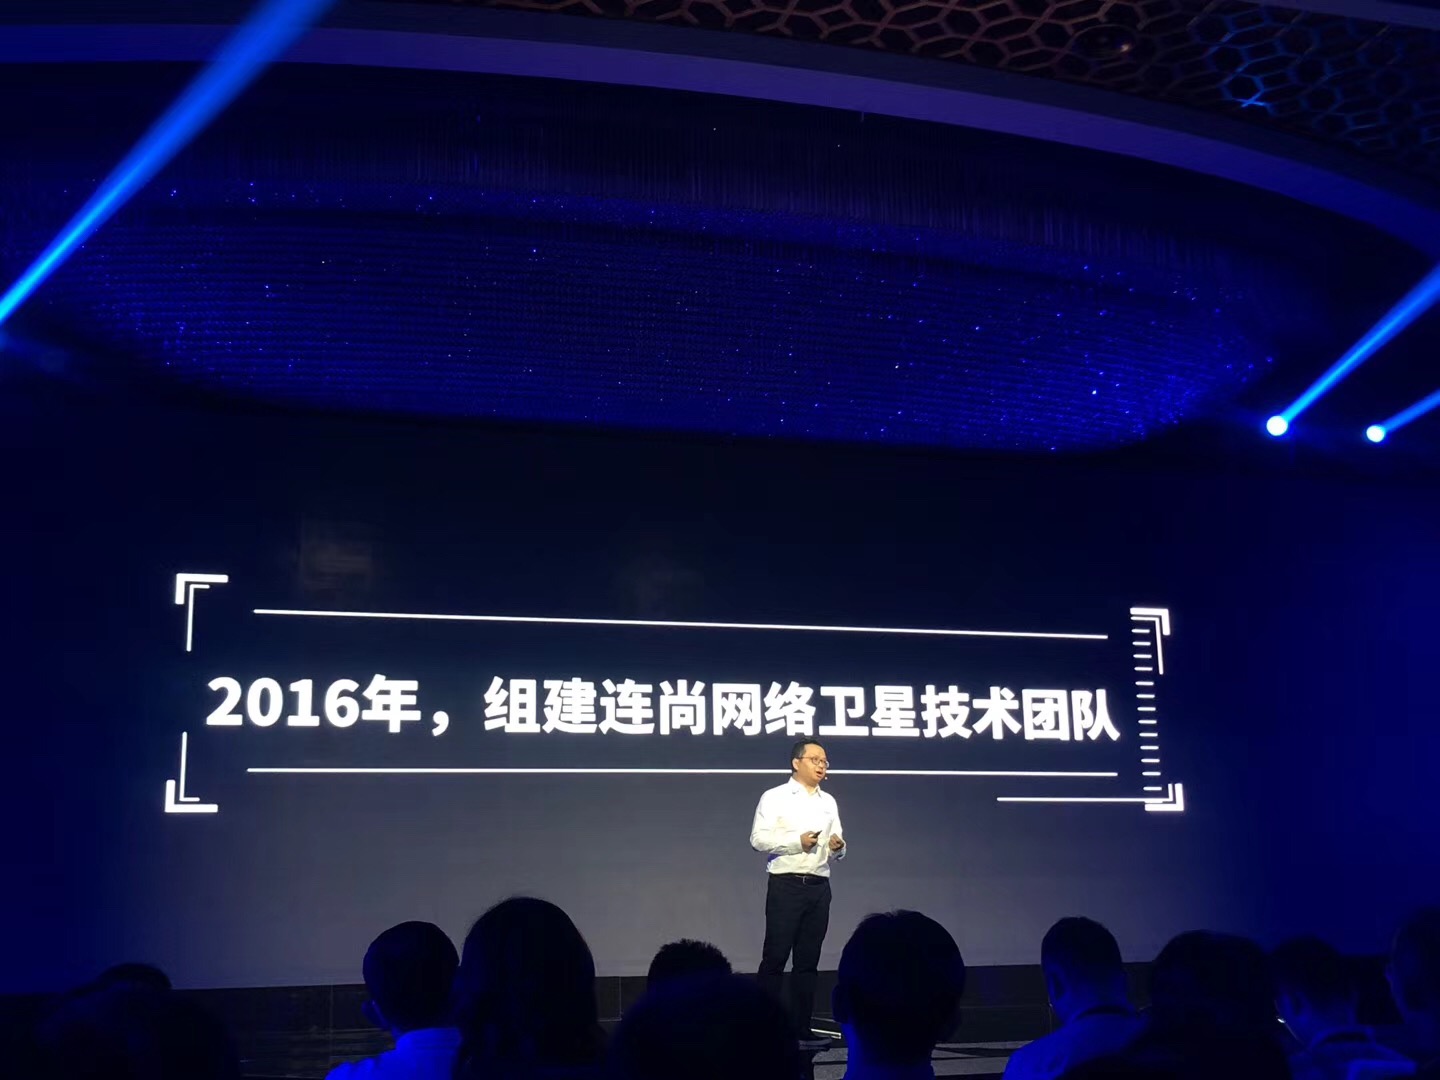 连尚网络宣布将于2019年发射第一颗卫星 2026年完成组网